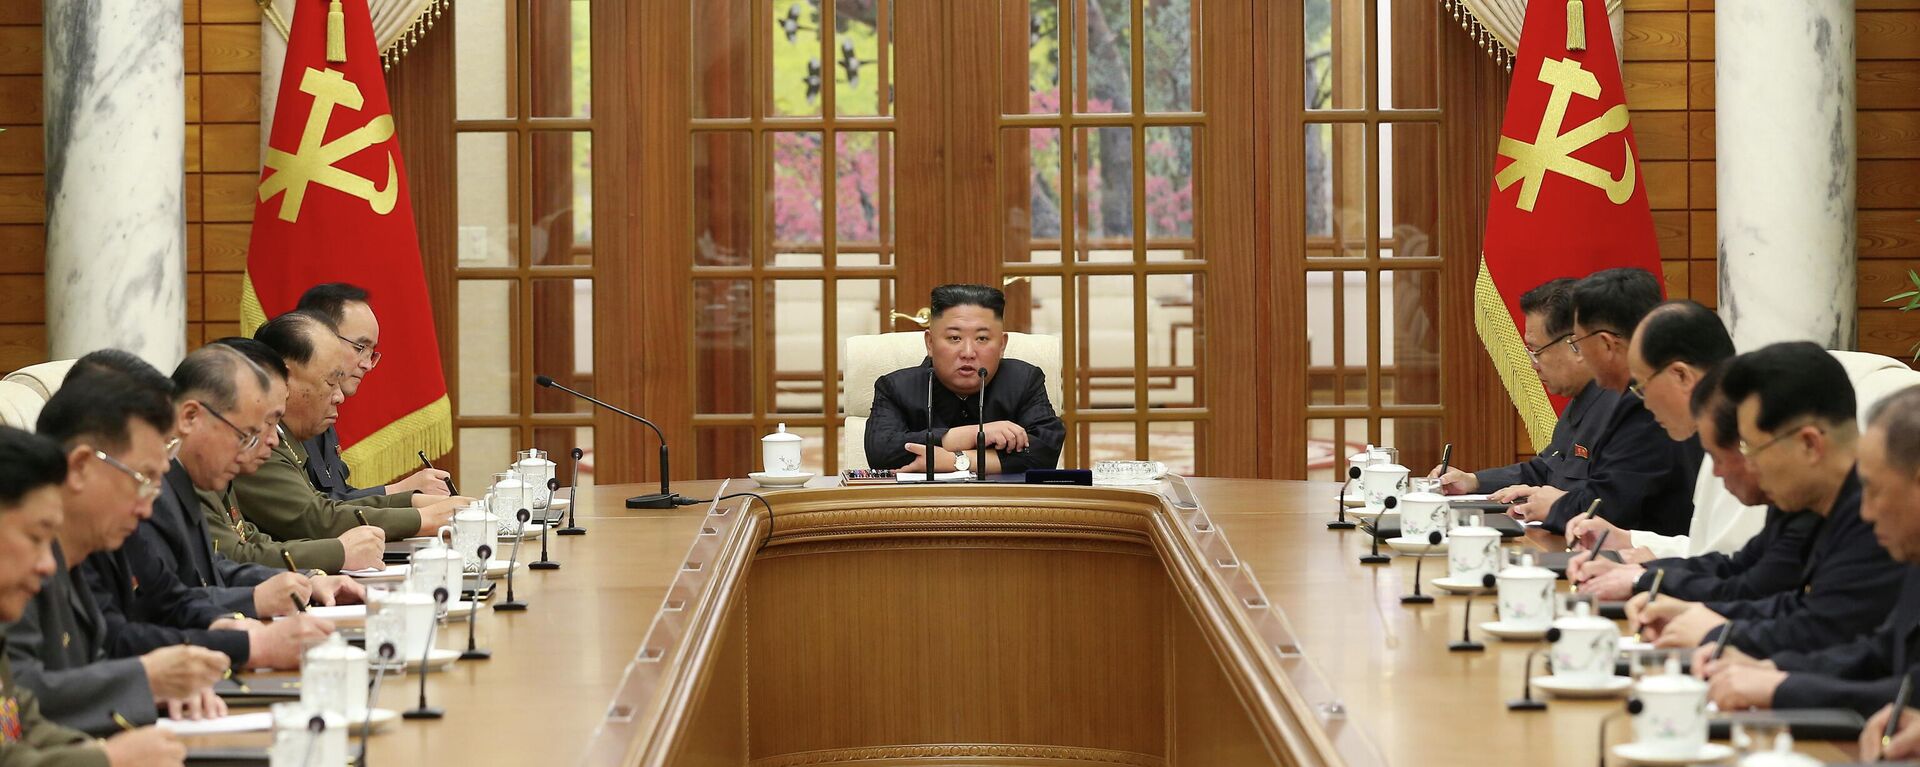 El líder de Cores del Norte Kim Jong-un - Sputnik Mundo, 1920, 05.06.2021